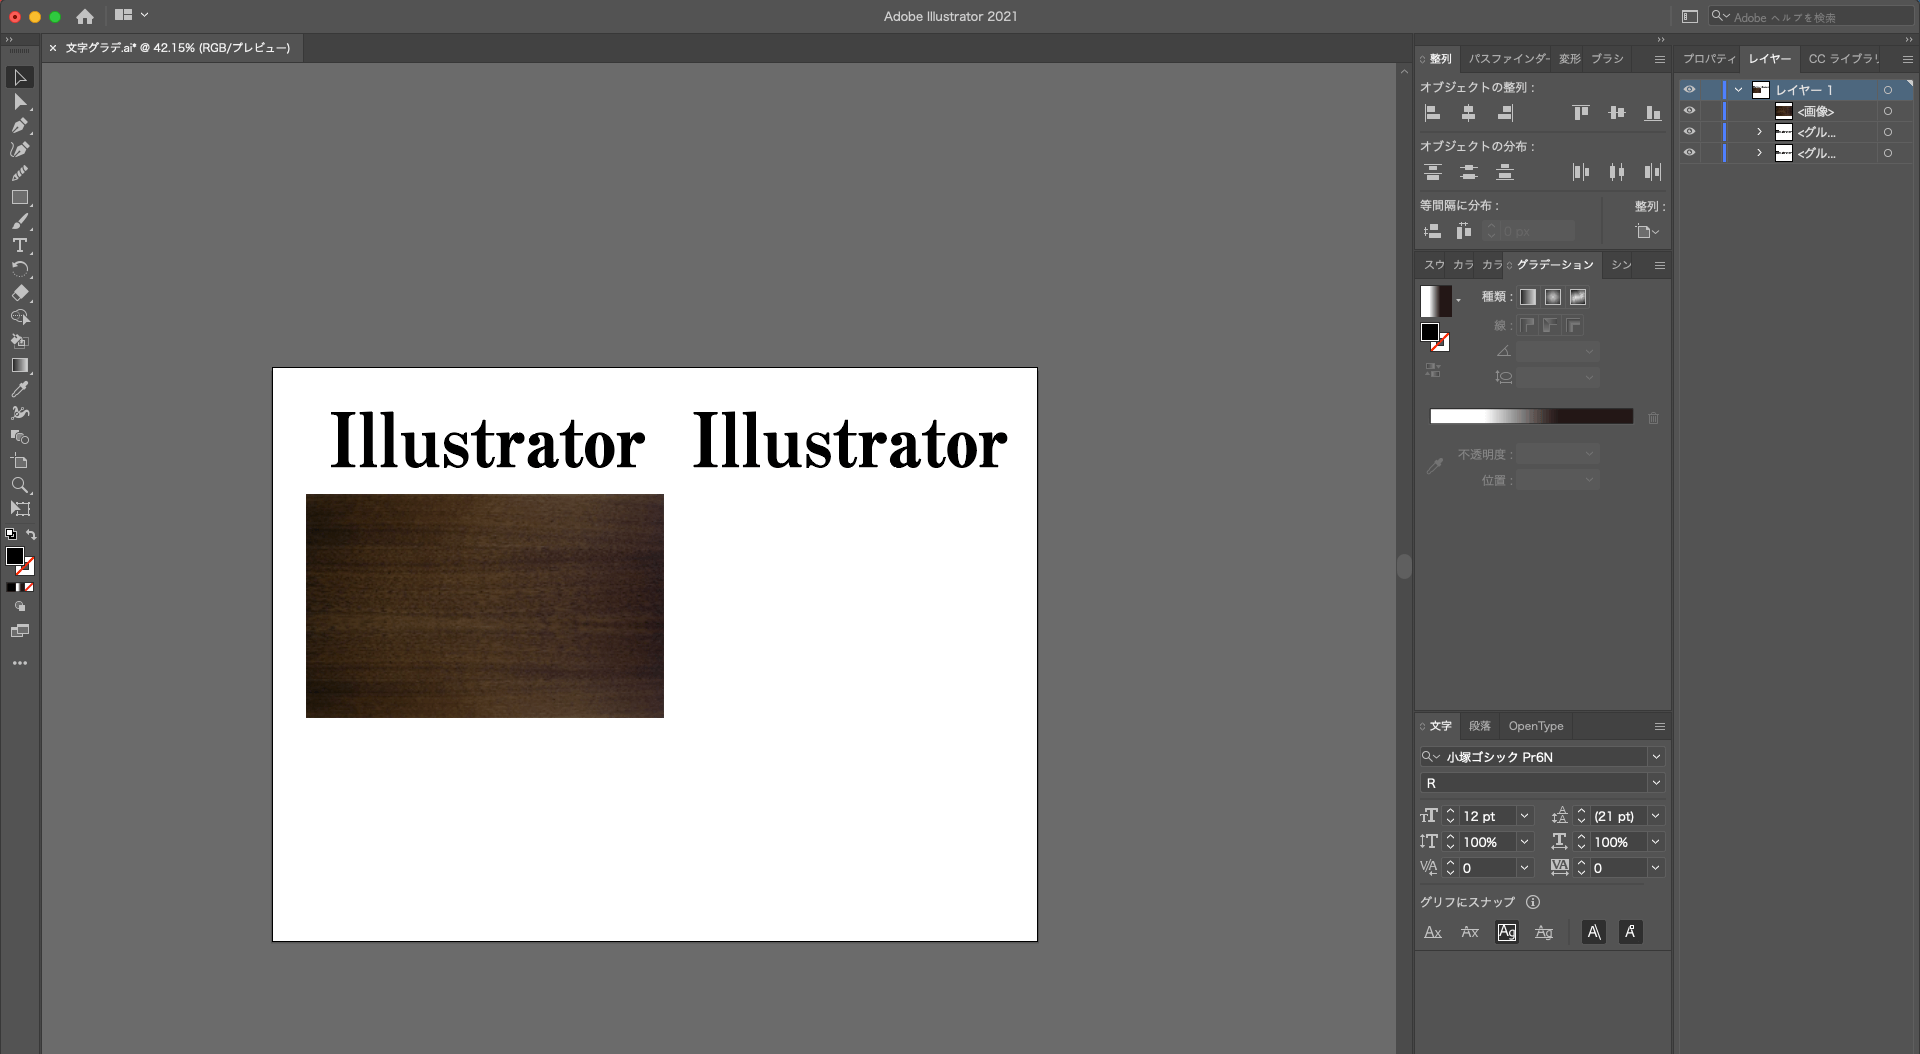 【Illustrator】だんだん透明になるグラデーションを文字にかける方法texture-gradation4